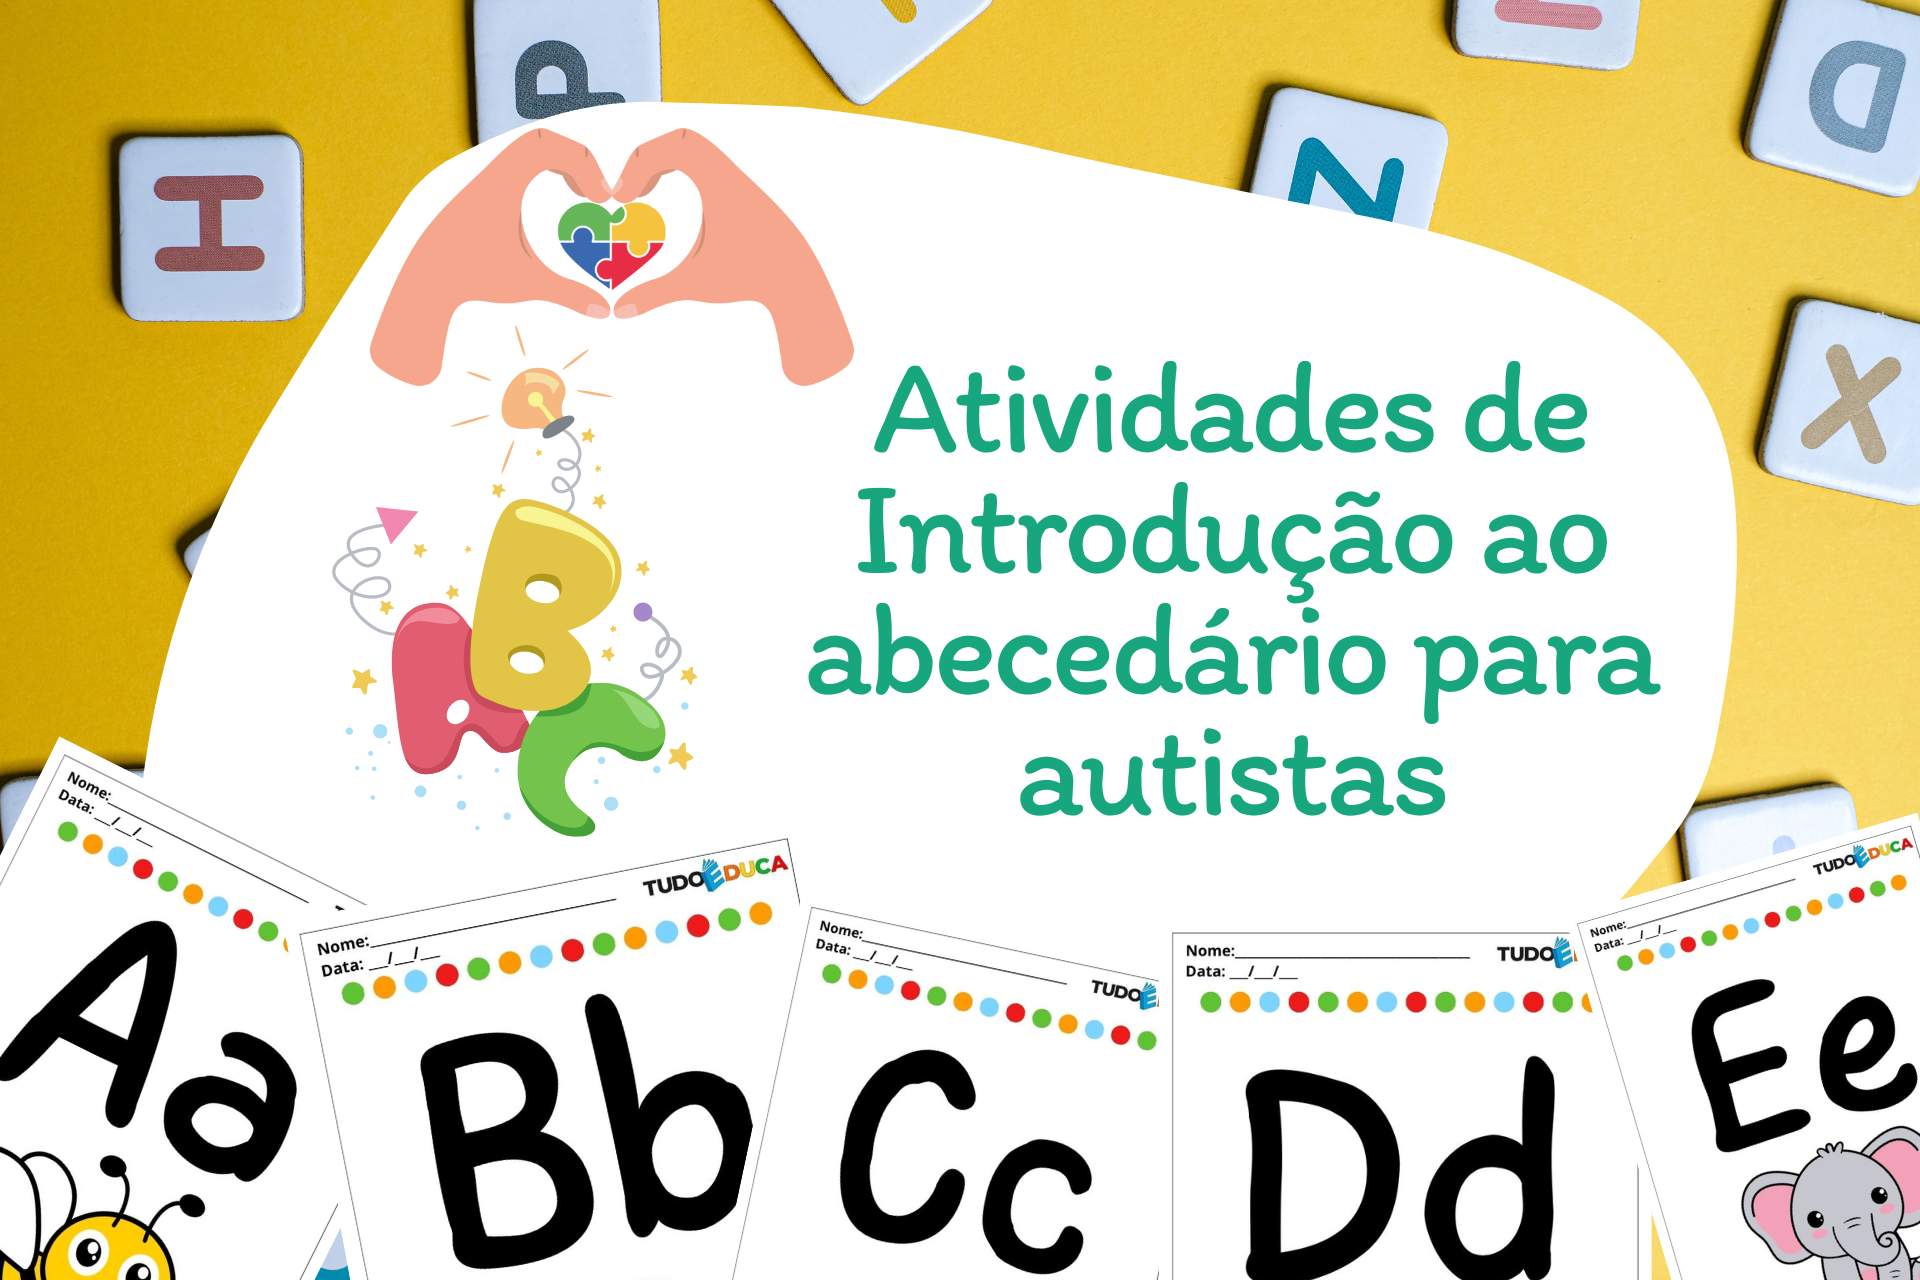 Atividades de introdução ao abecedário para autistas